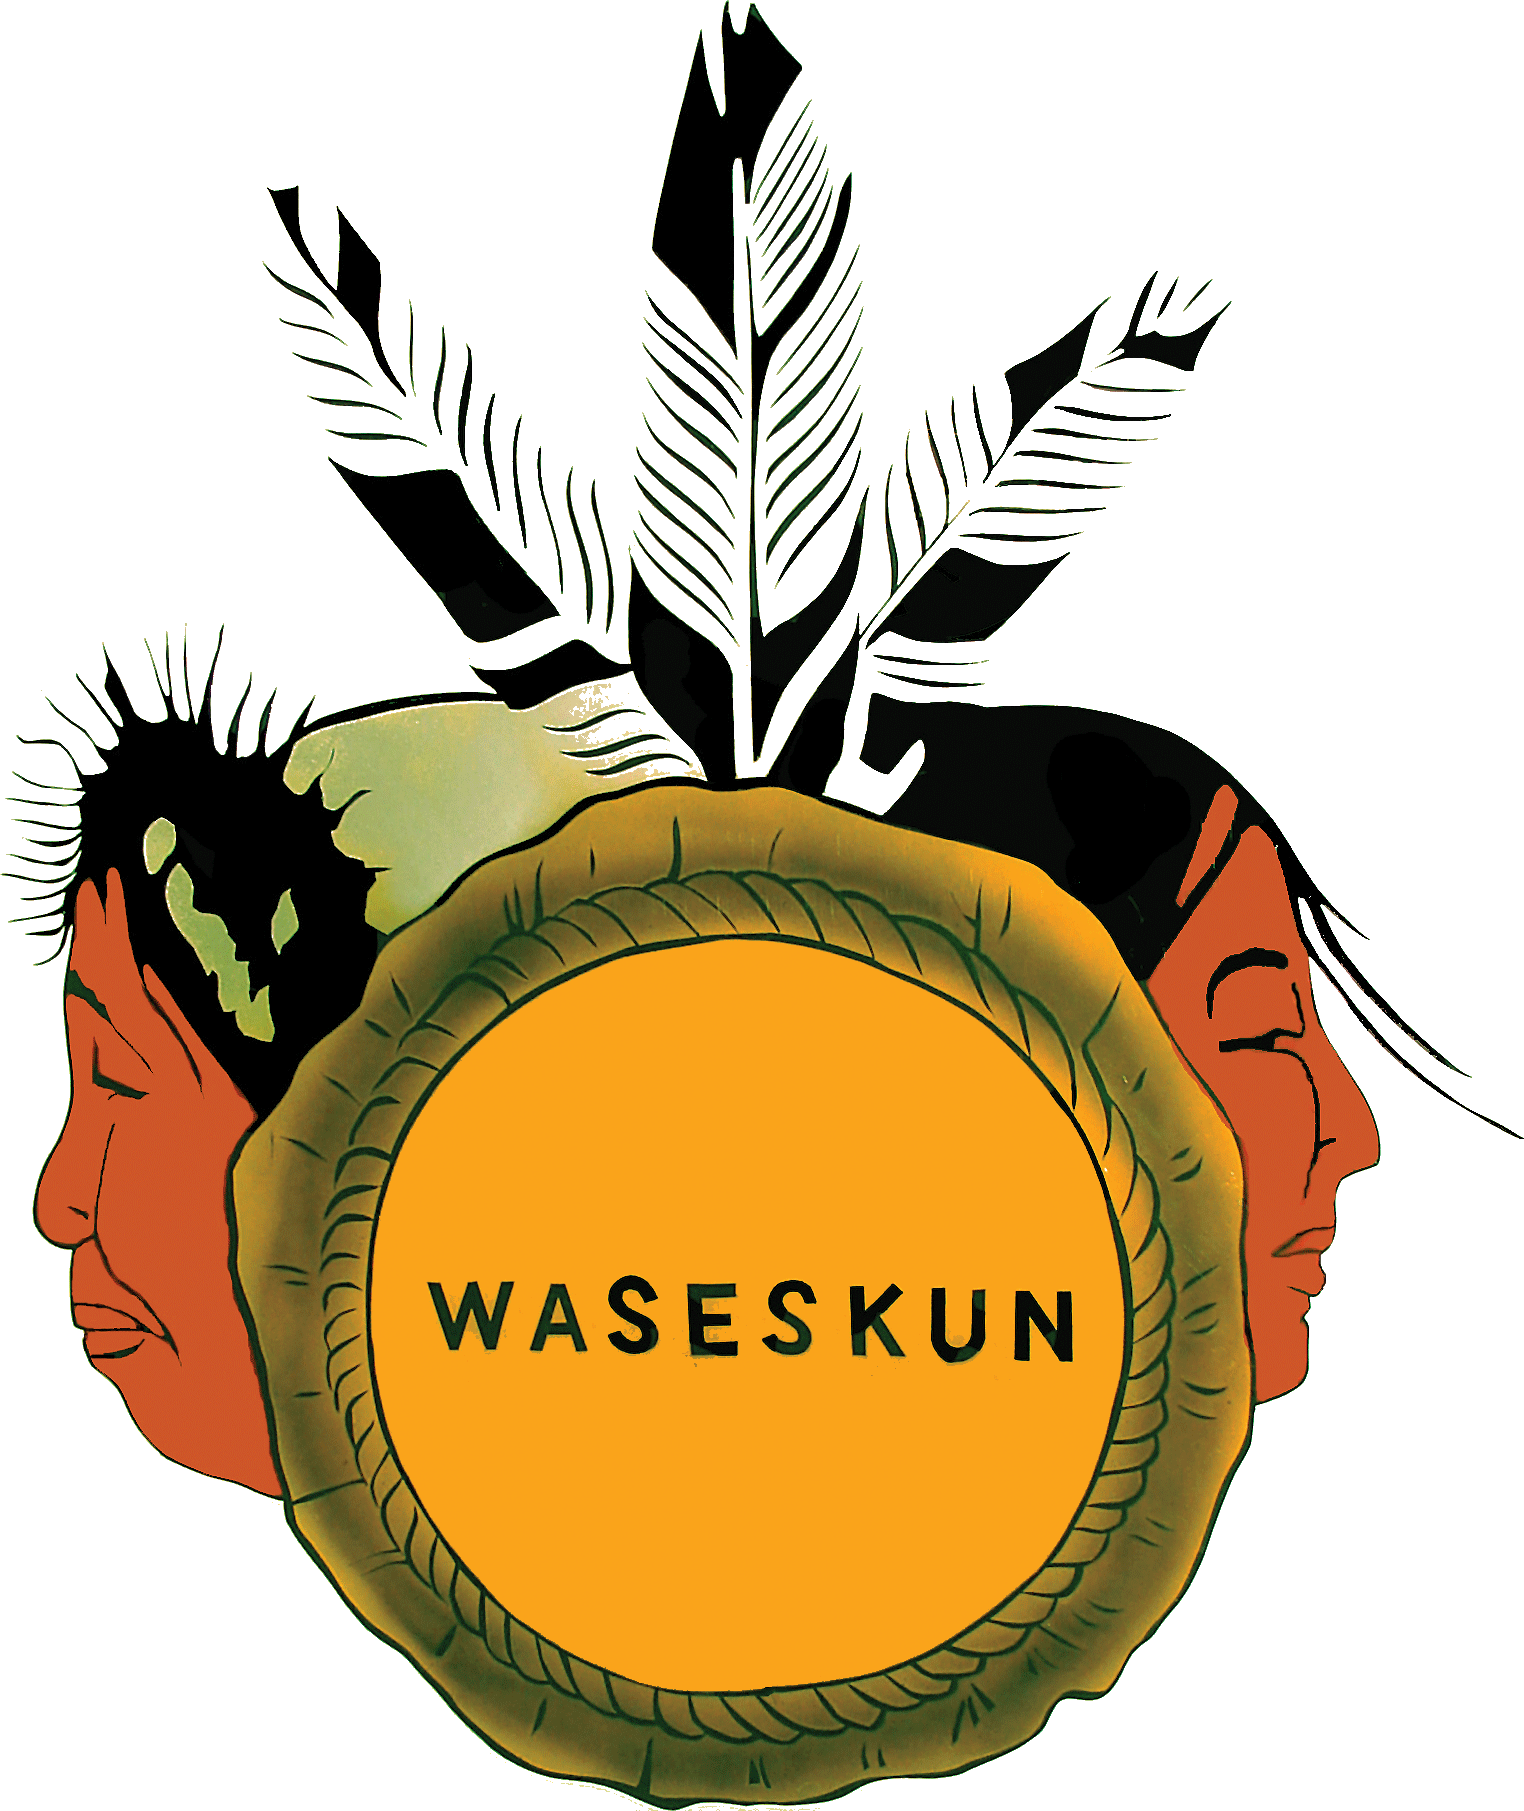 Waseskun logo